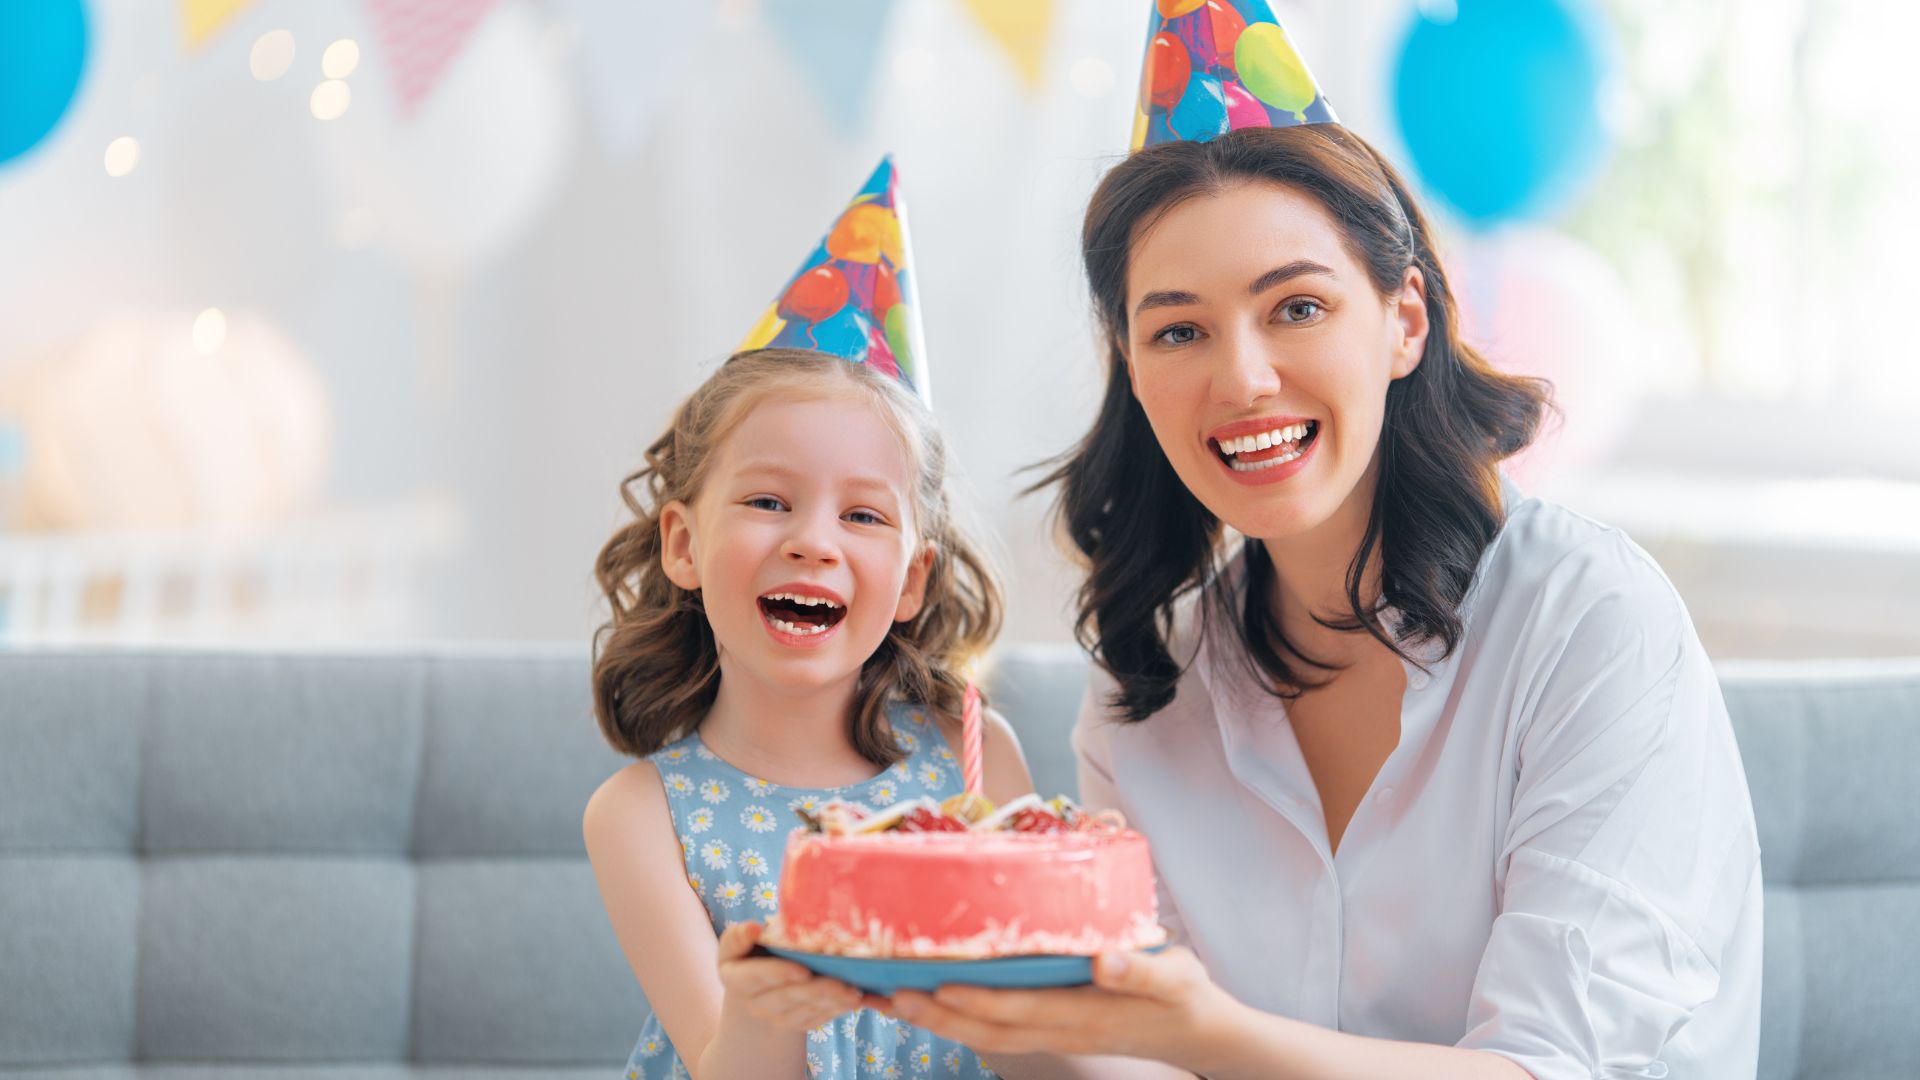 Imagem de uma mulher ao lado de uma criança com chapéu de aniversário, elas estão segurando um bolo rosa de aniversário e bexigas atrás delas.